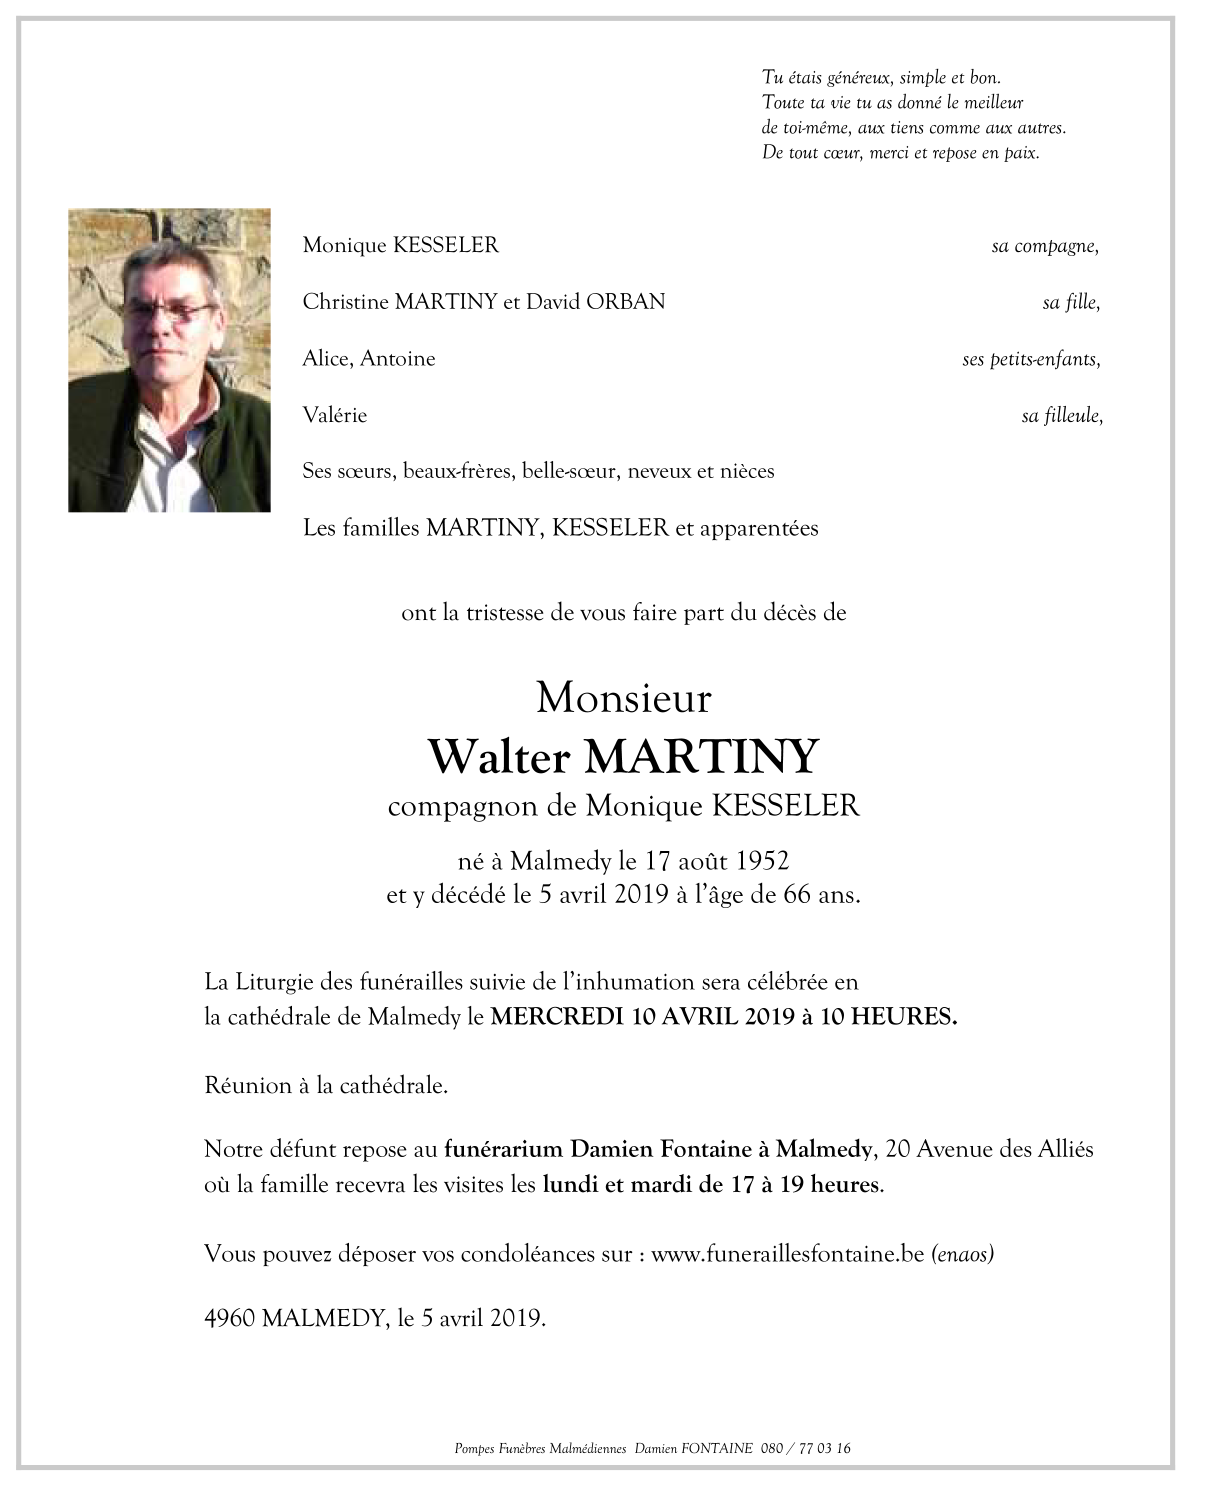 walter martiny